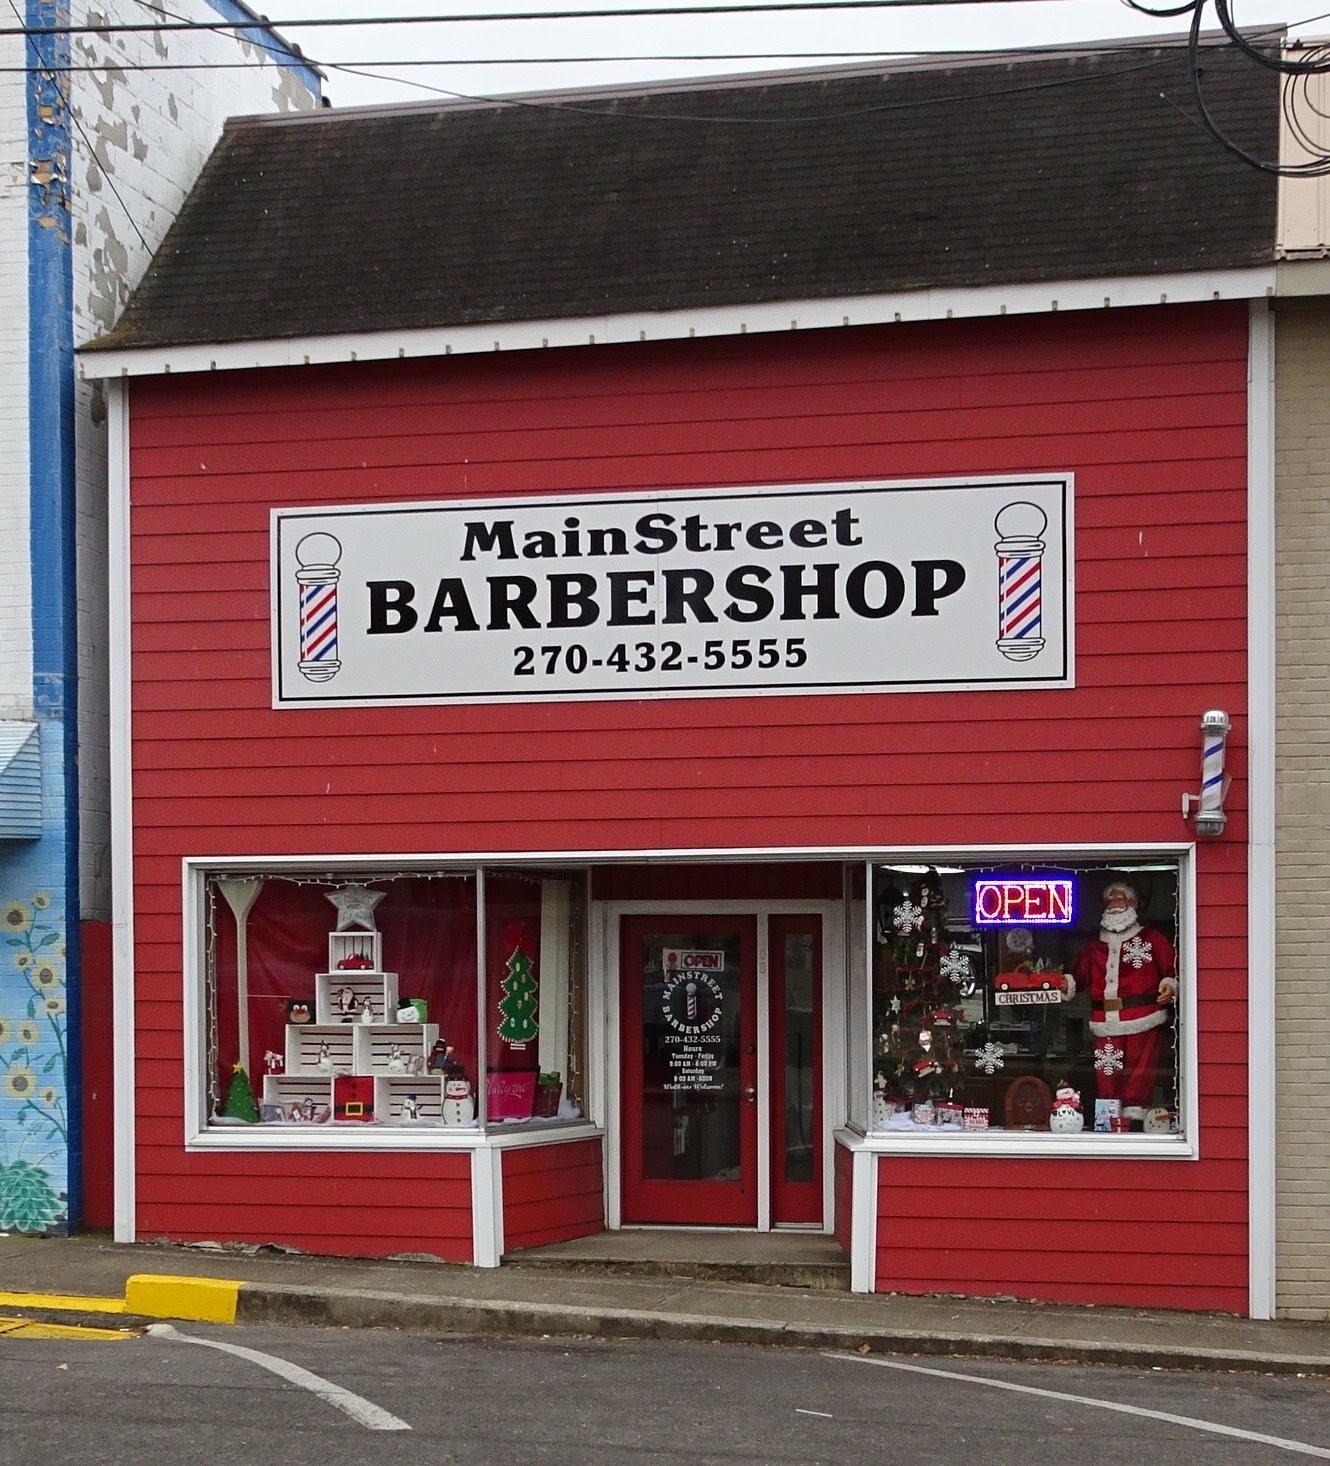 MainStreet Barber Shop 108 S Main St, Edmonton Kentucky 42129